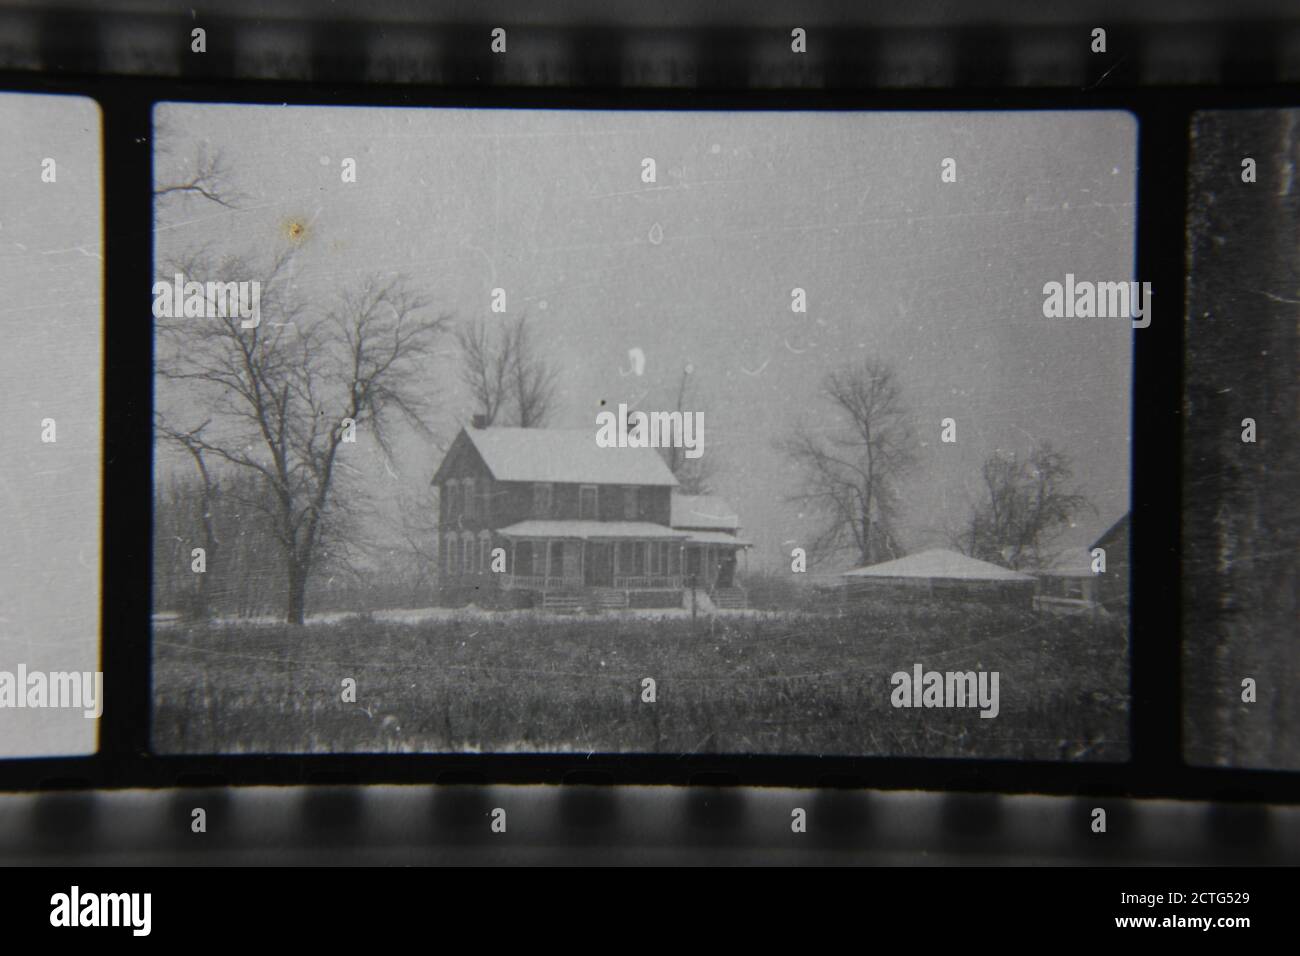 Feine Schwarz-Weiß-Fotografie aus den 1970er Jahren eines einsamen Gehöfts, das rauen Blizzard-Bedingungen trotzt. Stockfoto